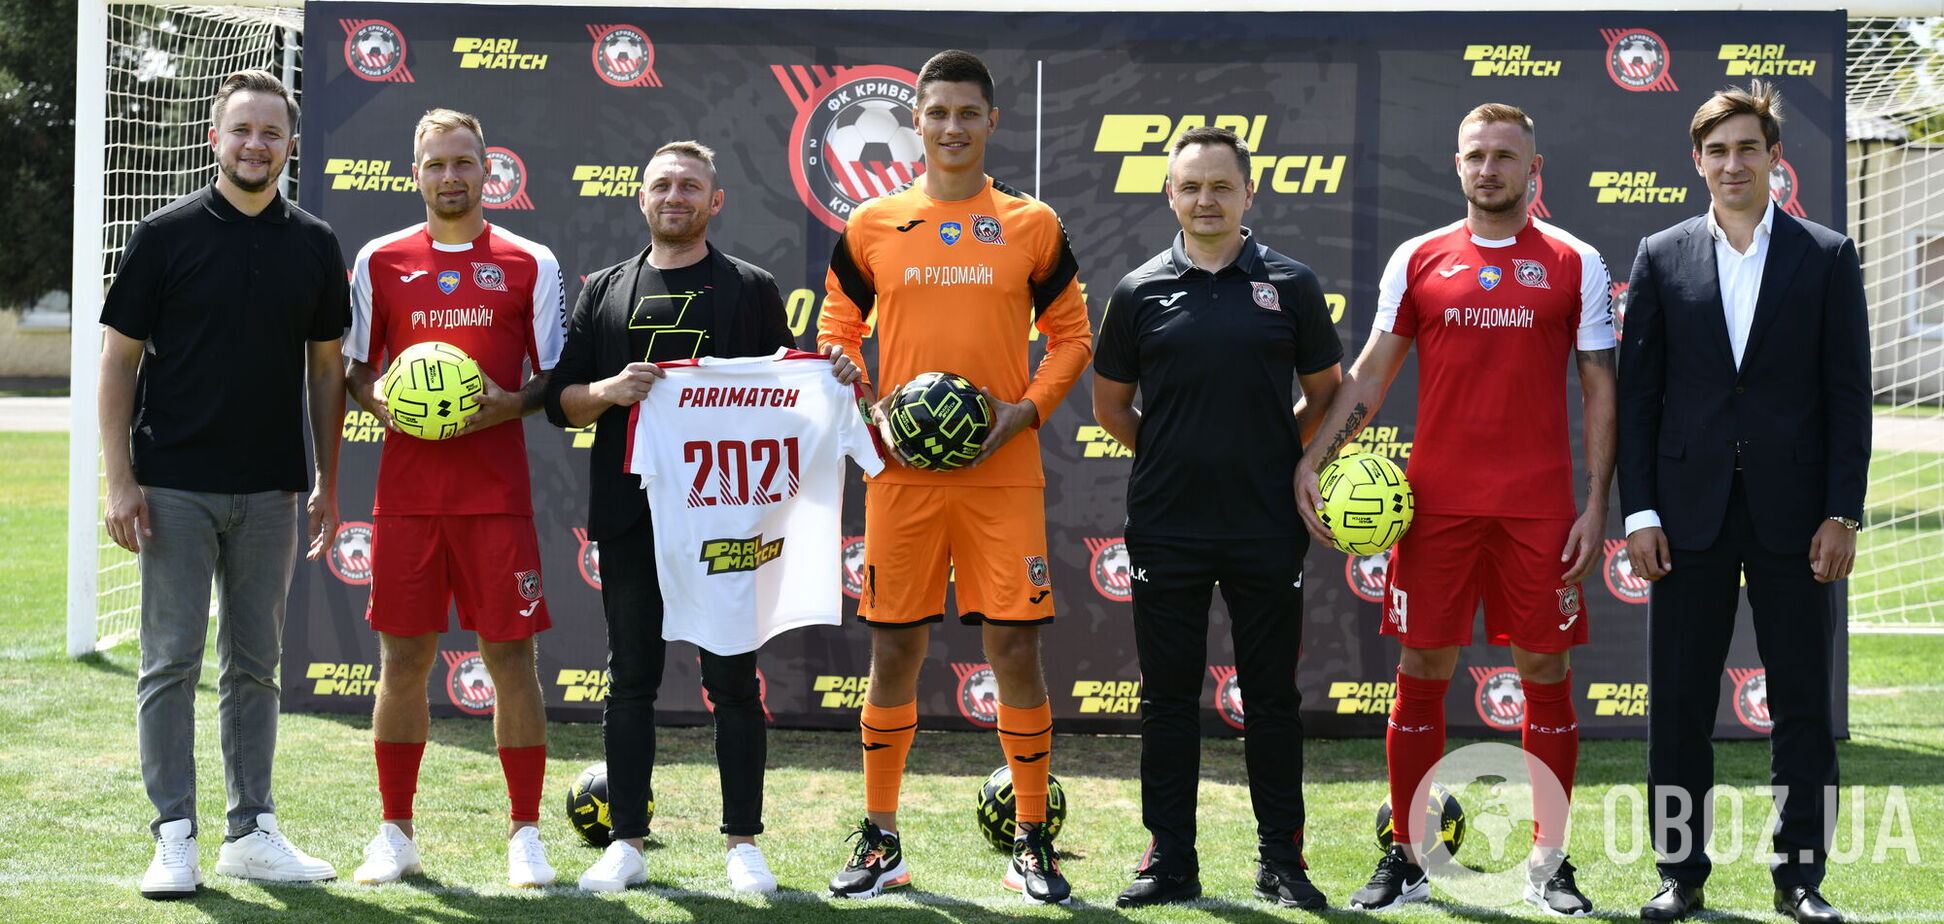 Parimatch стал официальным спонсором футбольного клуба 'Кривбасс'